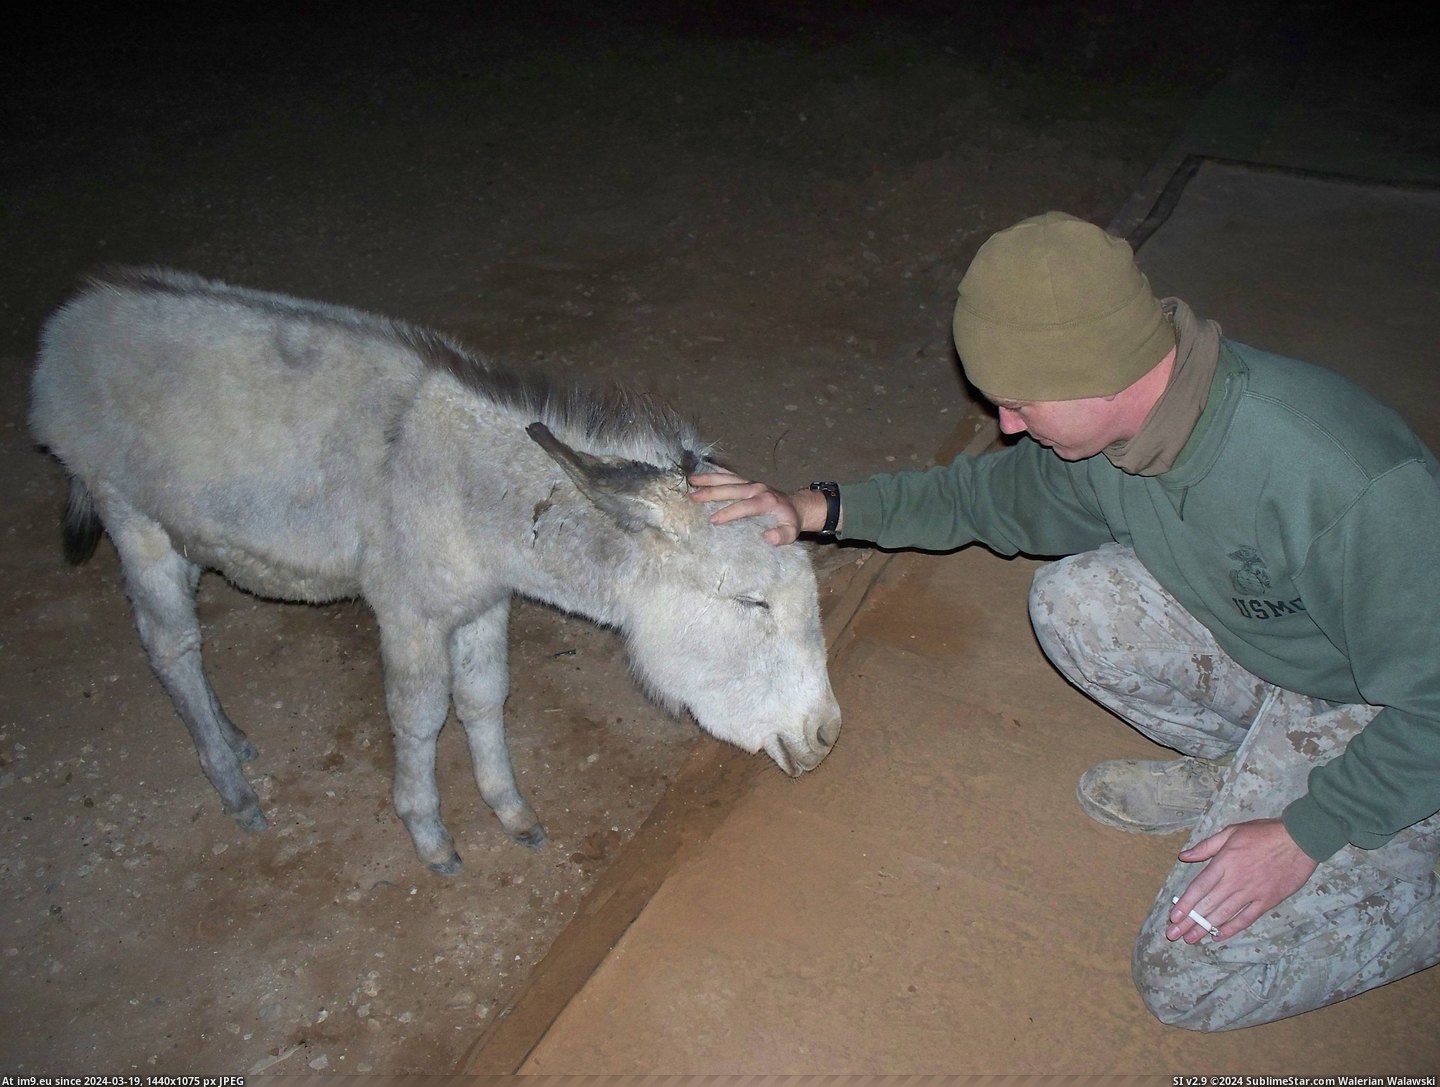 #Was #Had #Pet #Iraq #Donkey #Baby #Meet [Aww] When I was in Iraq, we had a pet donkey. Reddit, meet Baby! Pic. (Bild von album My r/AWW favs))